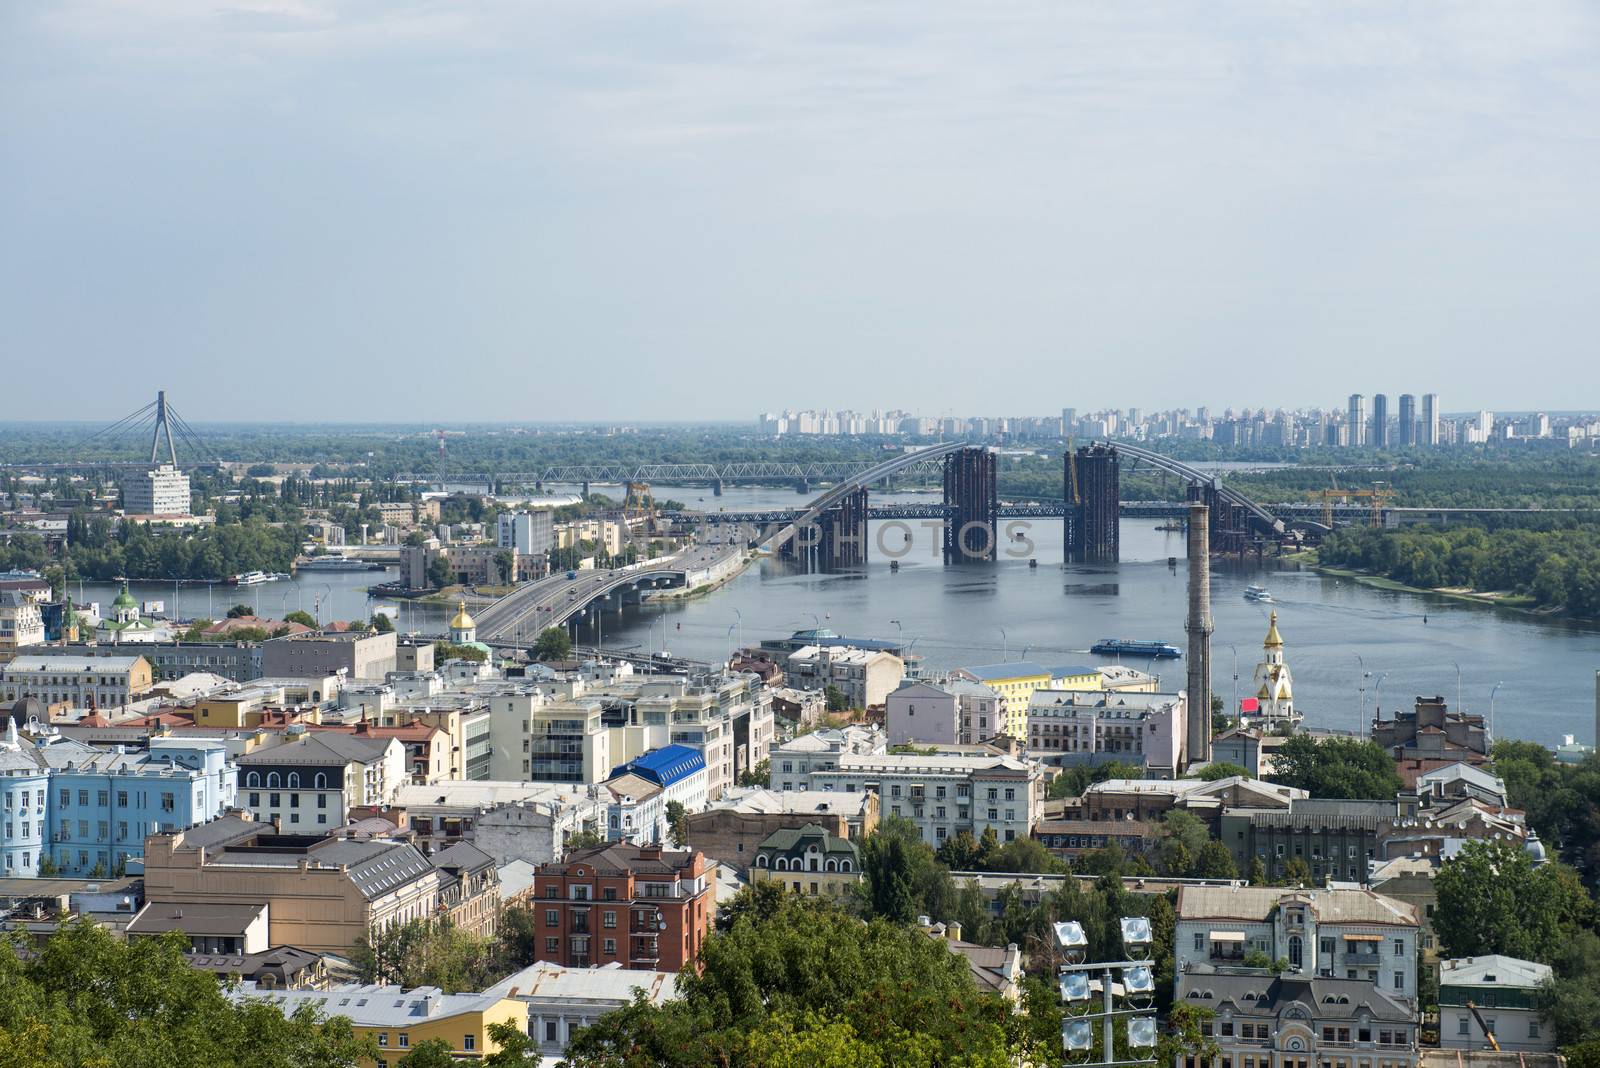 View of Dnepr river in Kiev